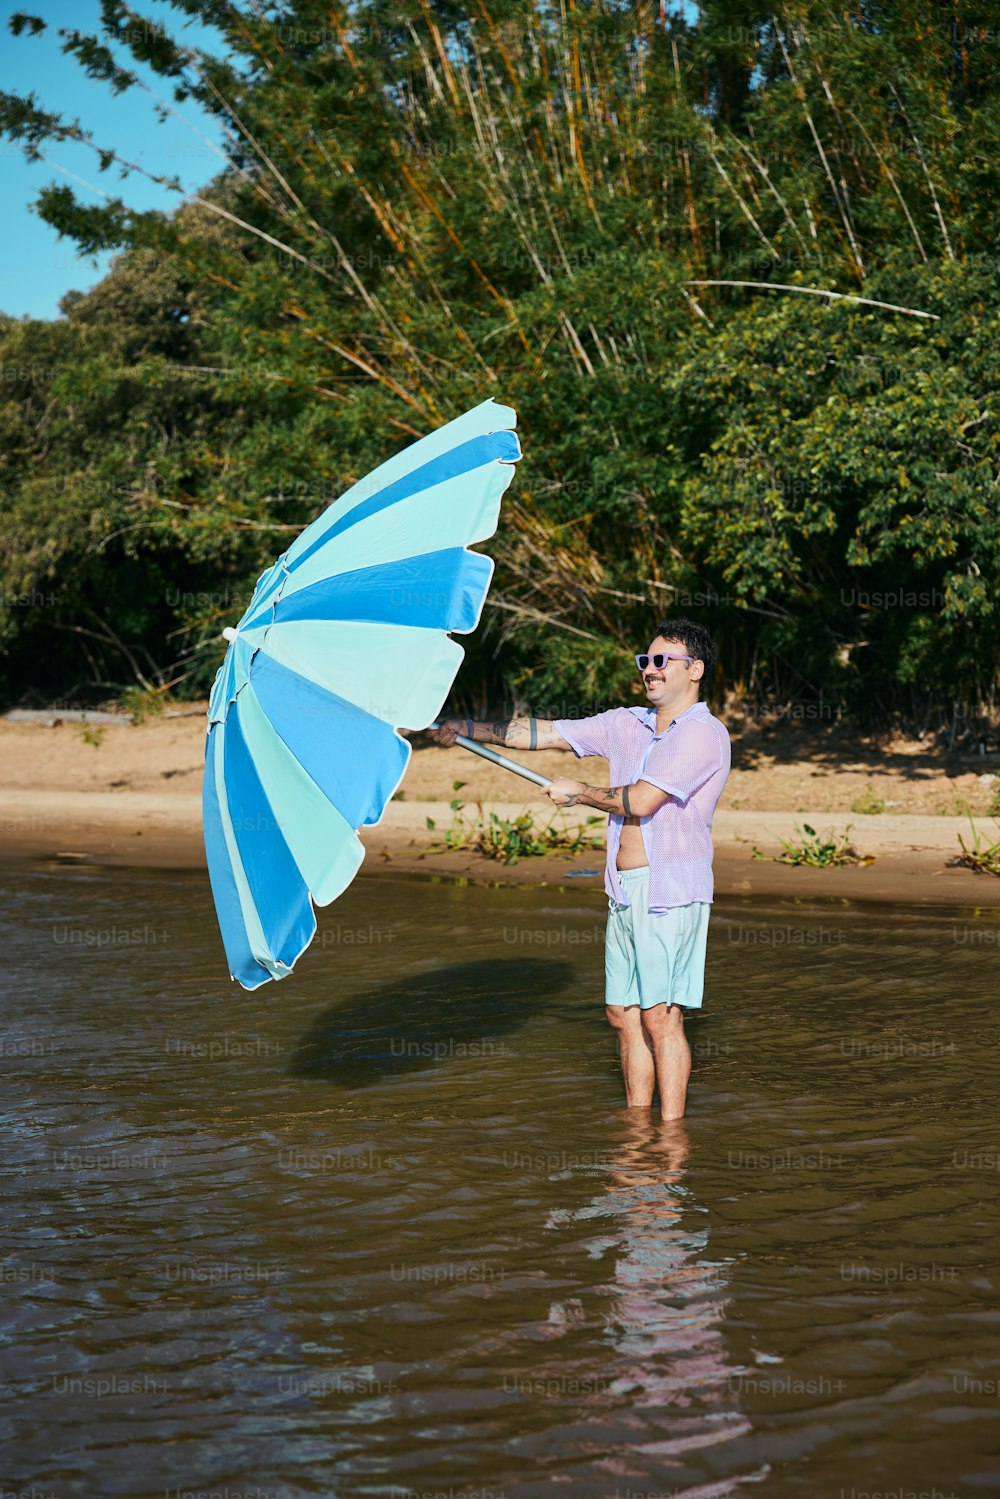 Un homme debout dans l’eau tenant un parapluie bleu et blanc